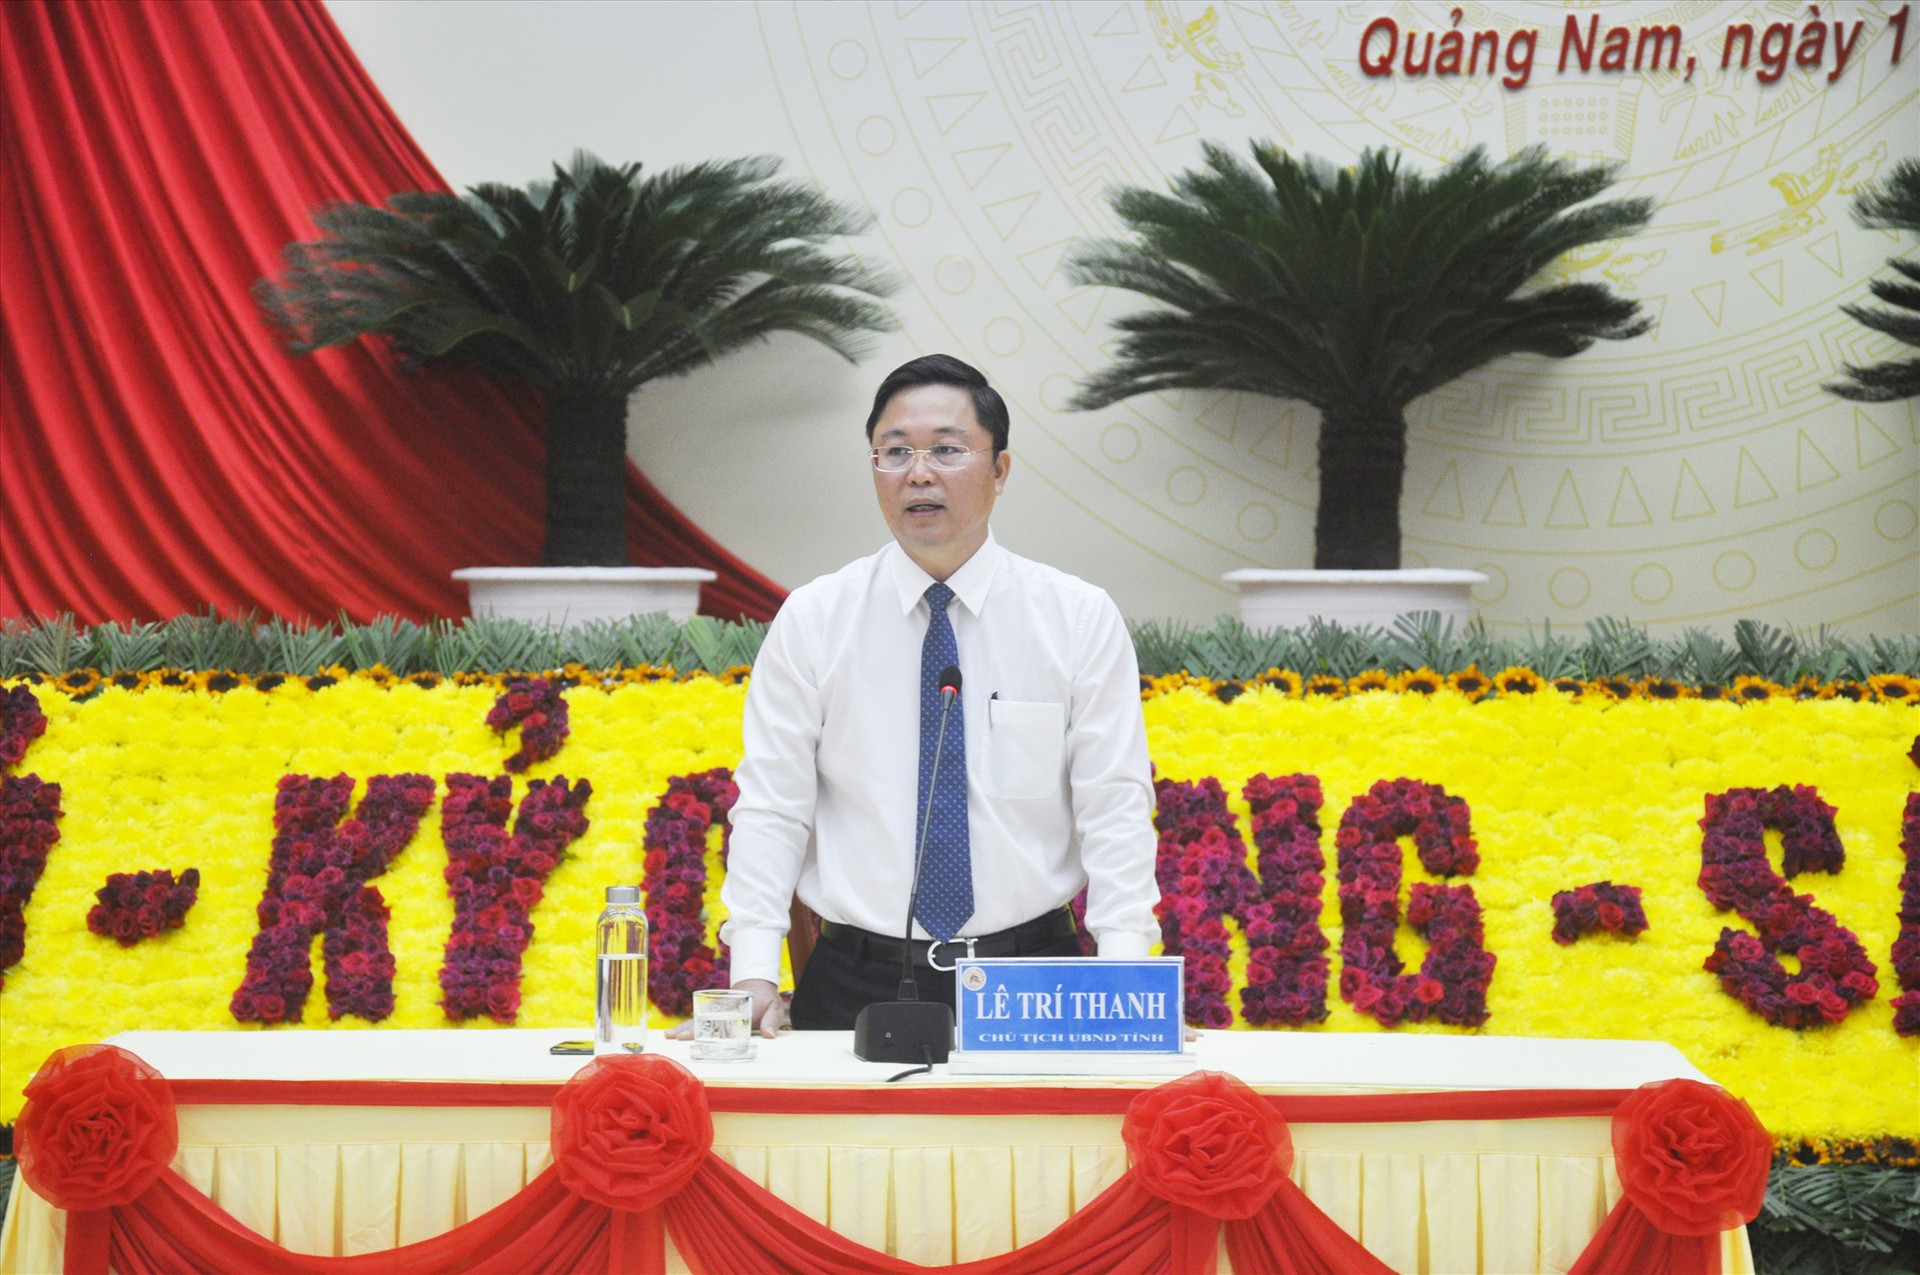 Phó Bí thư Tỉnh ủy, Chủ tịch UBND tỉnh Lê Trí Thanh thông tin đến các cơ quan báo chí về định hướng phát triển của Quảng Nam đến năm 2025, tầm nhìn đến năm 2030.